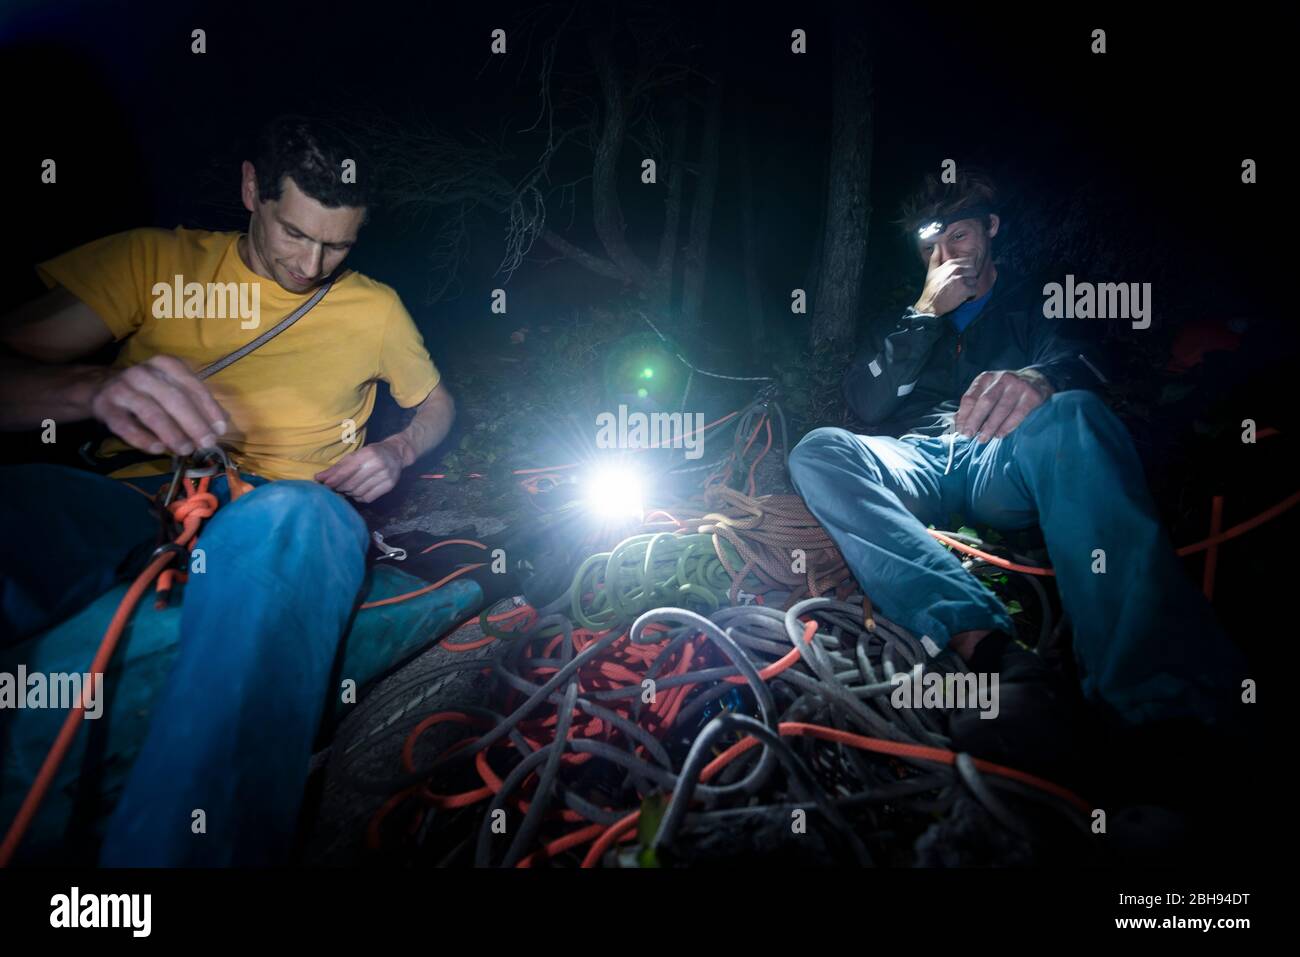 Zwei Männer sitzen nach dem Aufstieg und organisieren im Dunkeln Kletterausrüstung Stockfoto